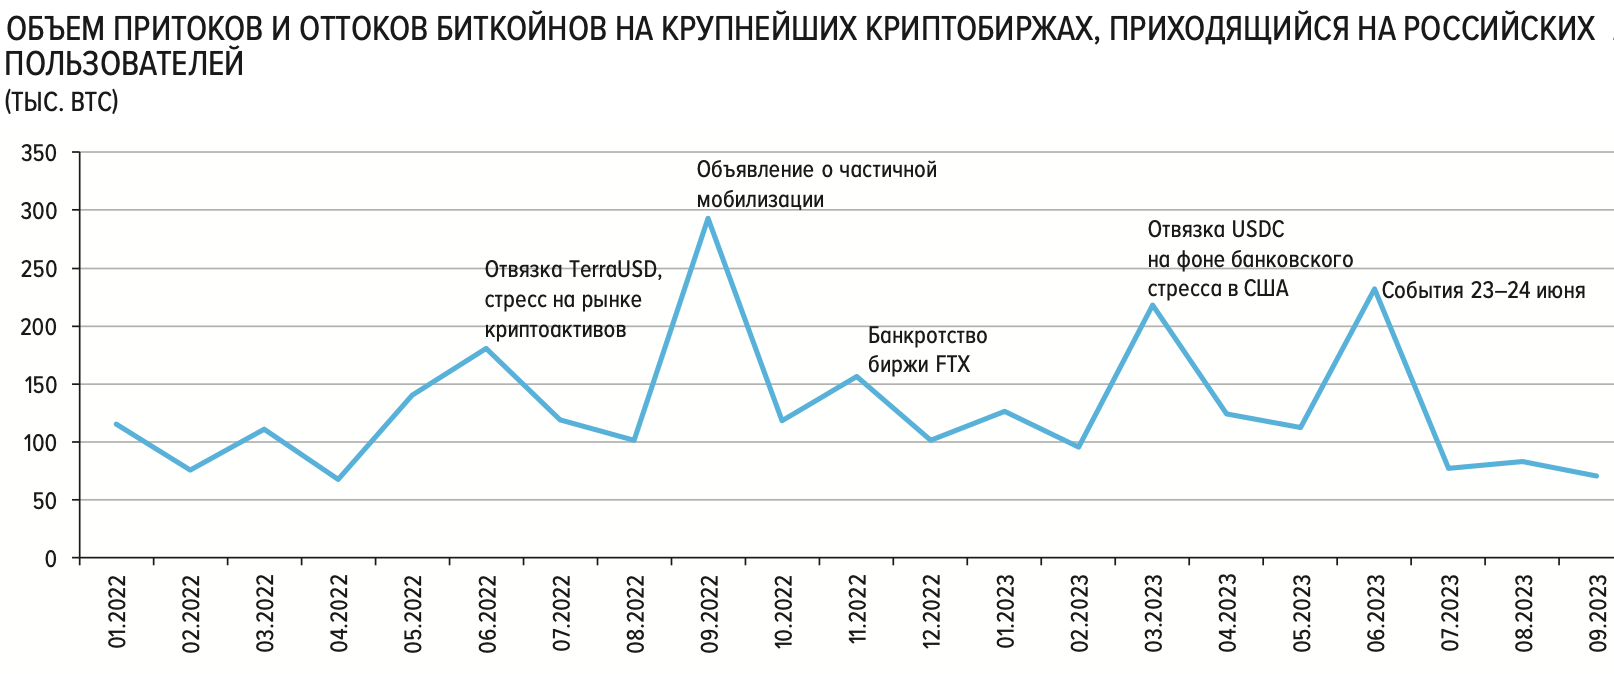 Приток и отток биткоинов российских пользователей на крупнейших криптобиржах. Источник: Банк Росии по данным сервиса&nbsp;&laquo;Прозрачный блокчейн&raquo;